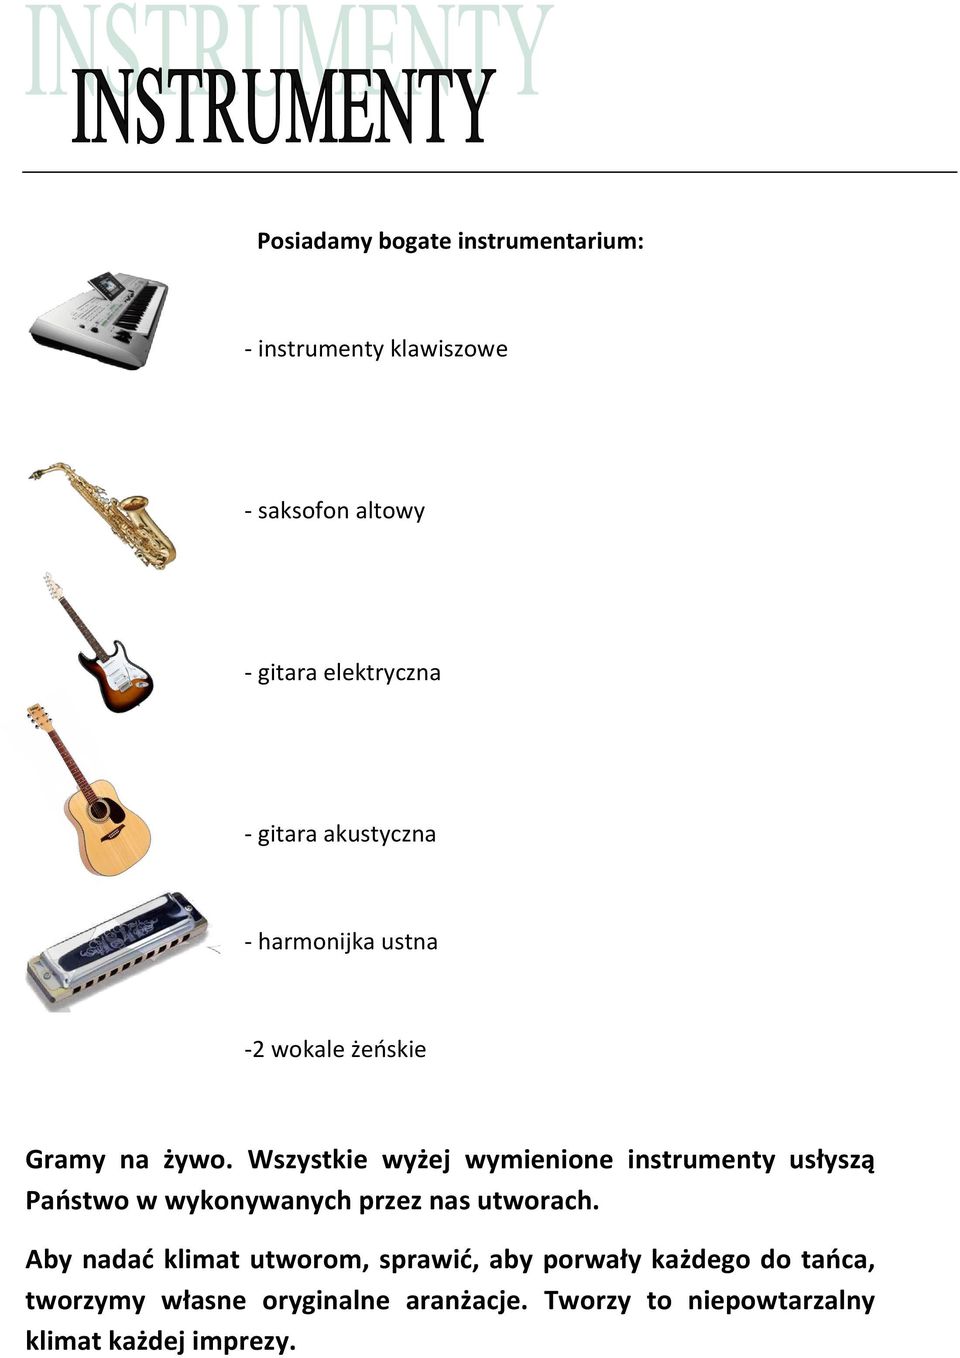 Wszystkie wyżej wymienione instrumenty usłyszą Państwo w wykonywanych przez nas utworach.